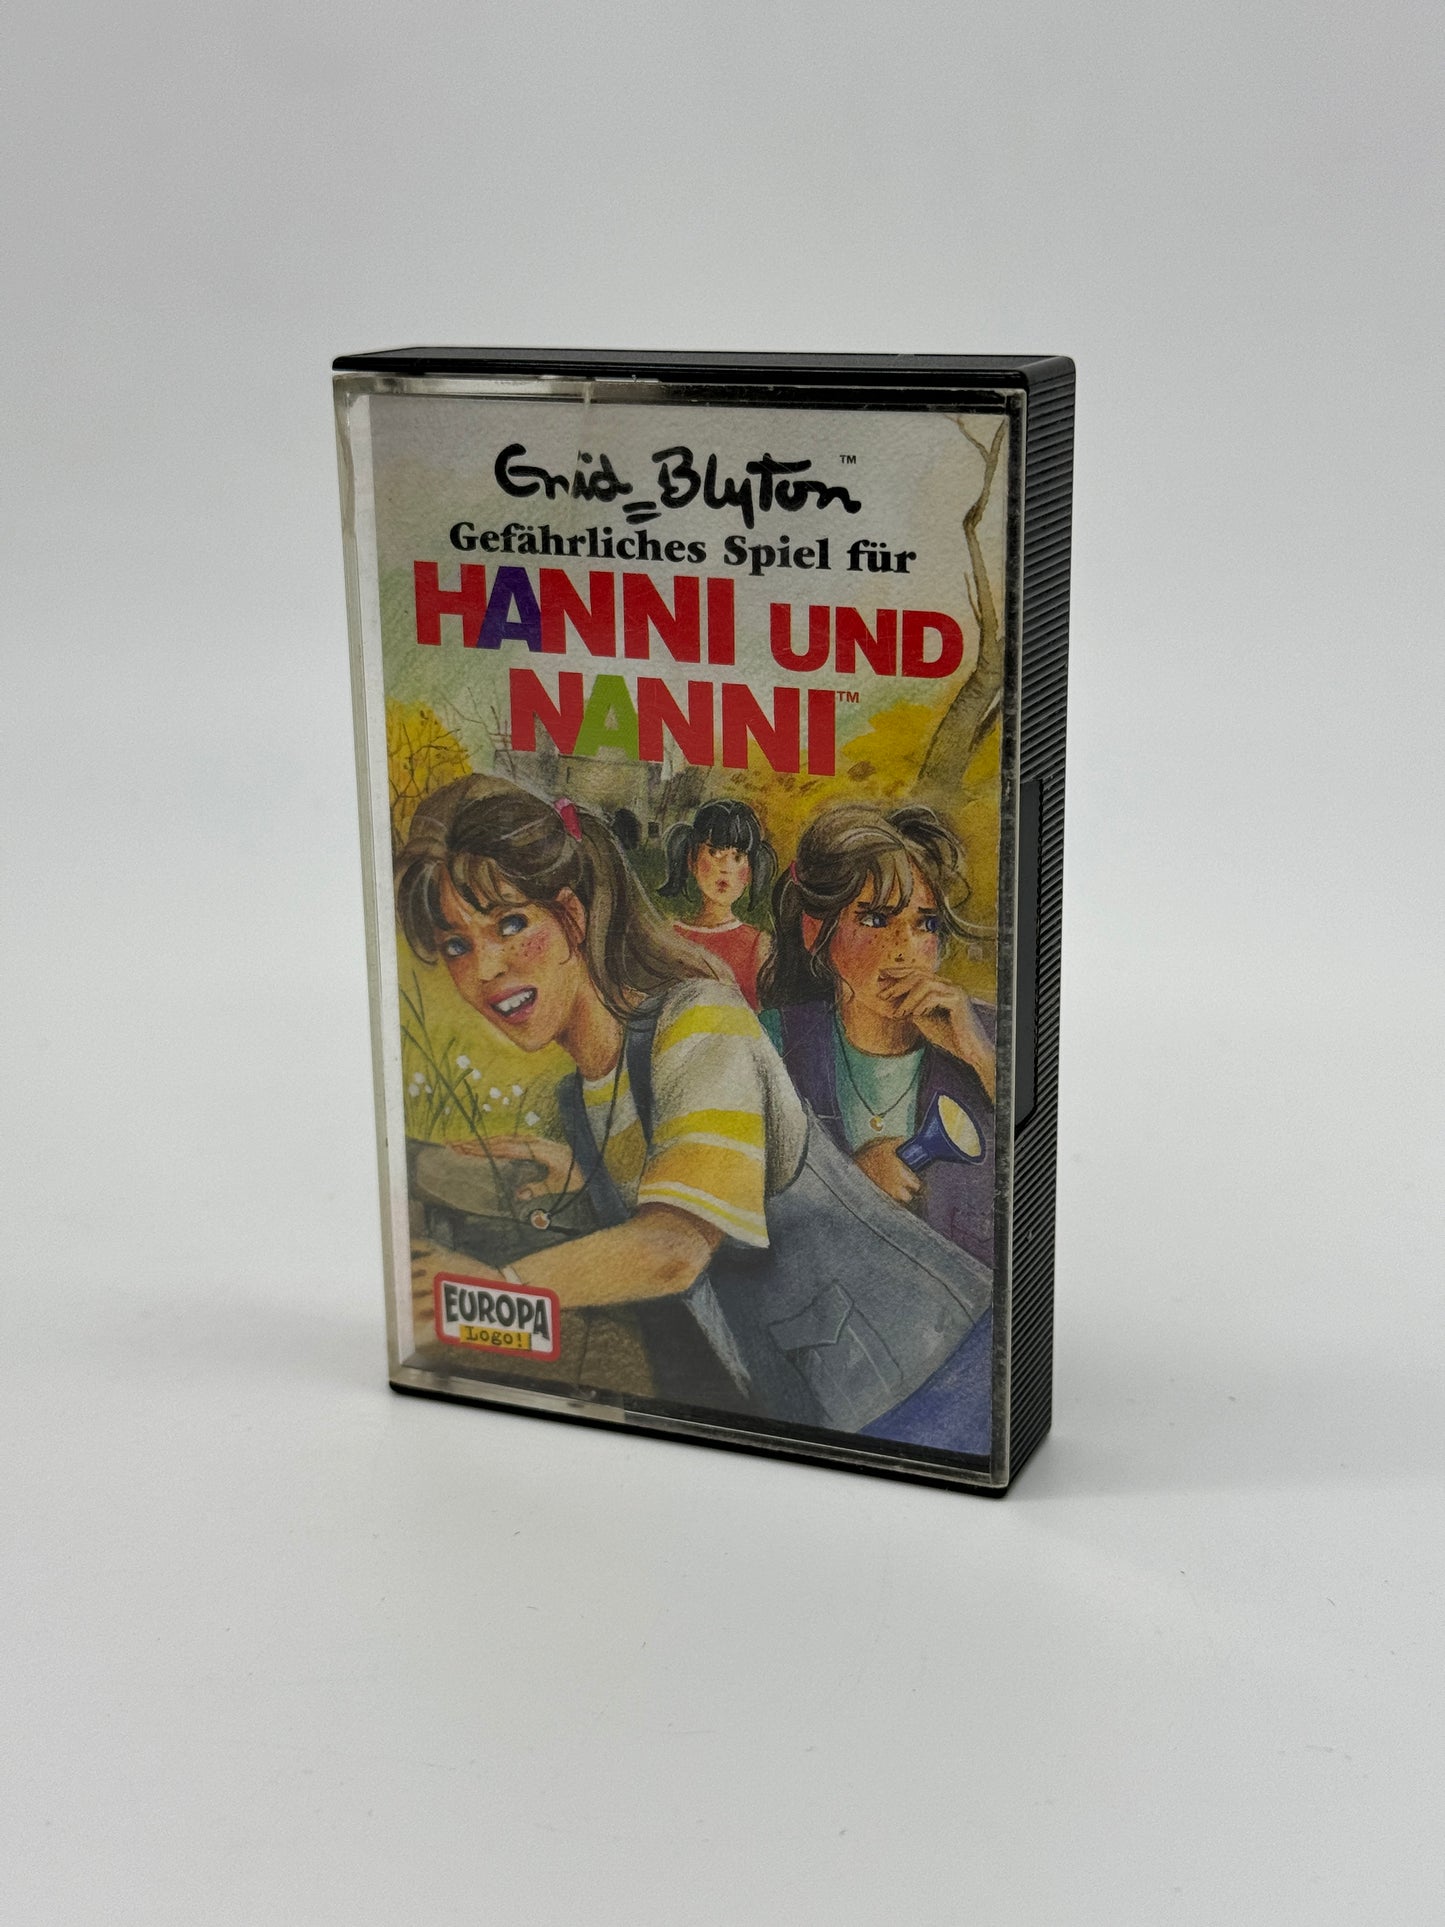 Enid Blyton "Gefährliches Spiel für Hanni und Nanni"  Folge 19 Hörspielkassette (2004)